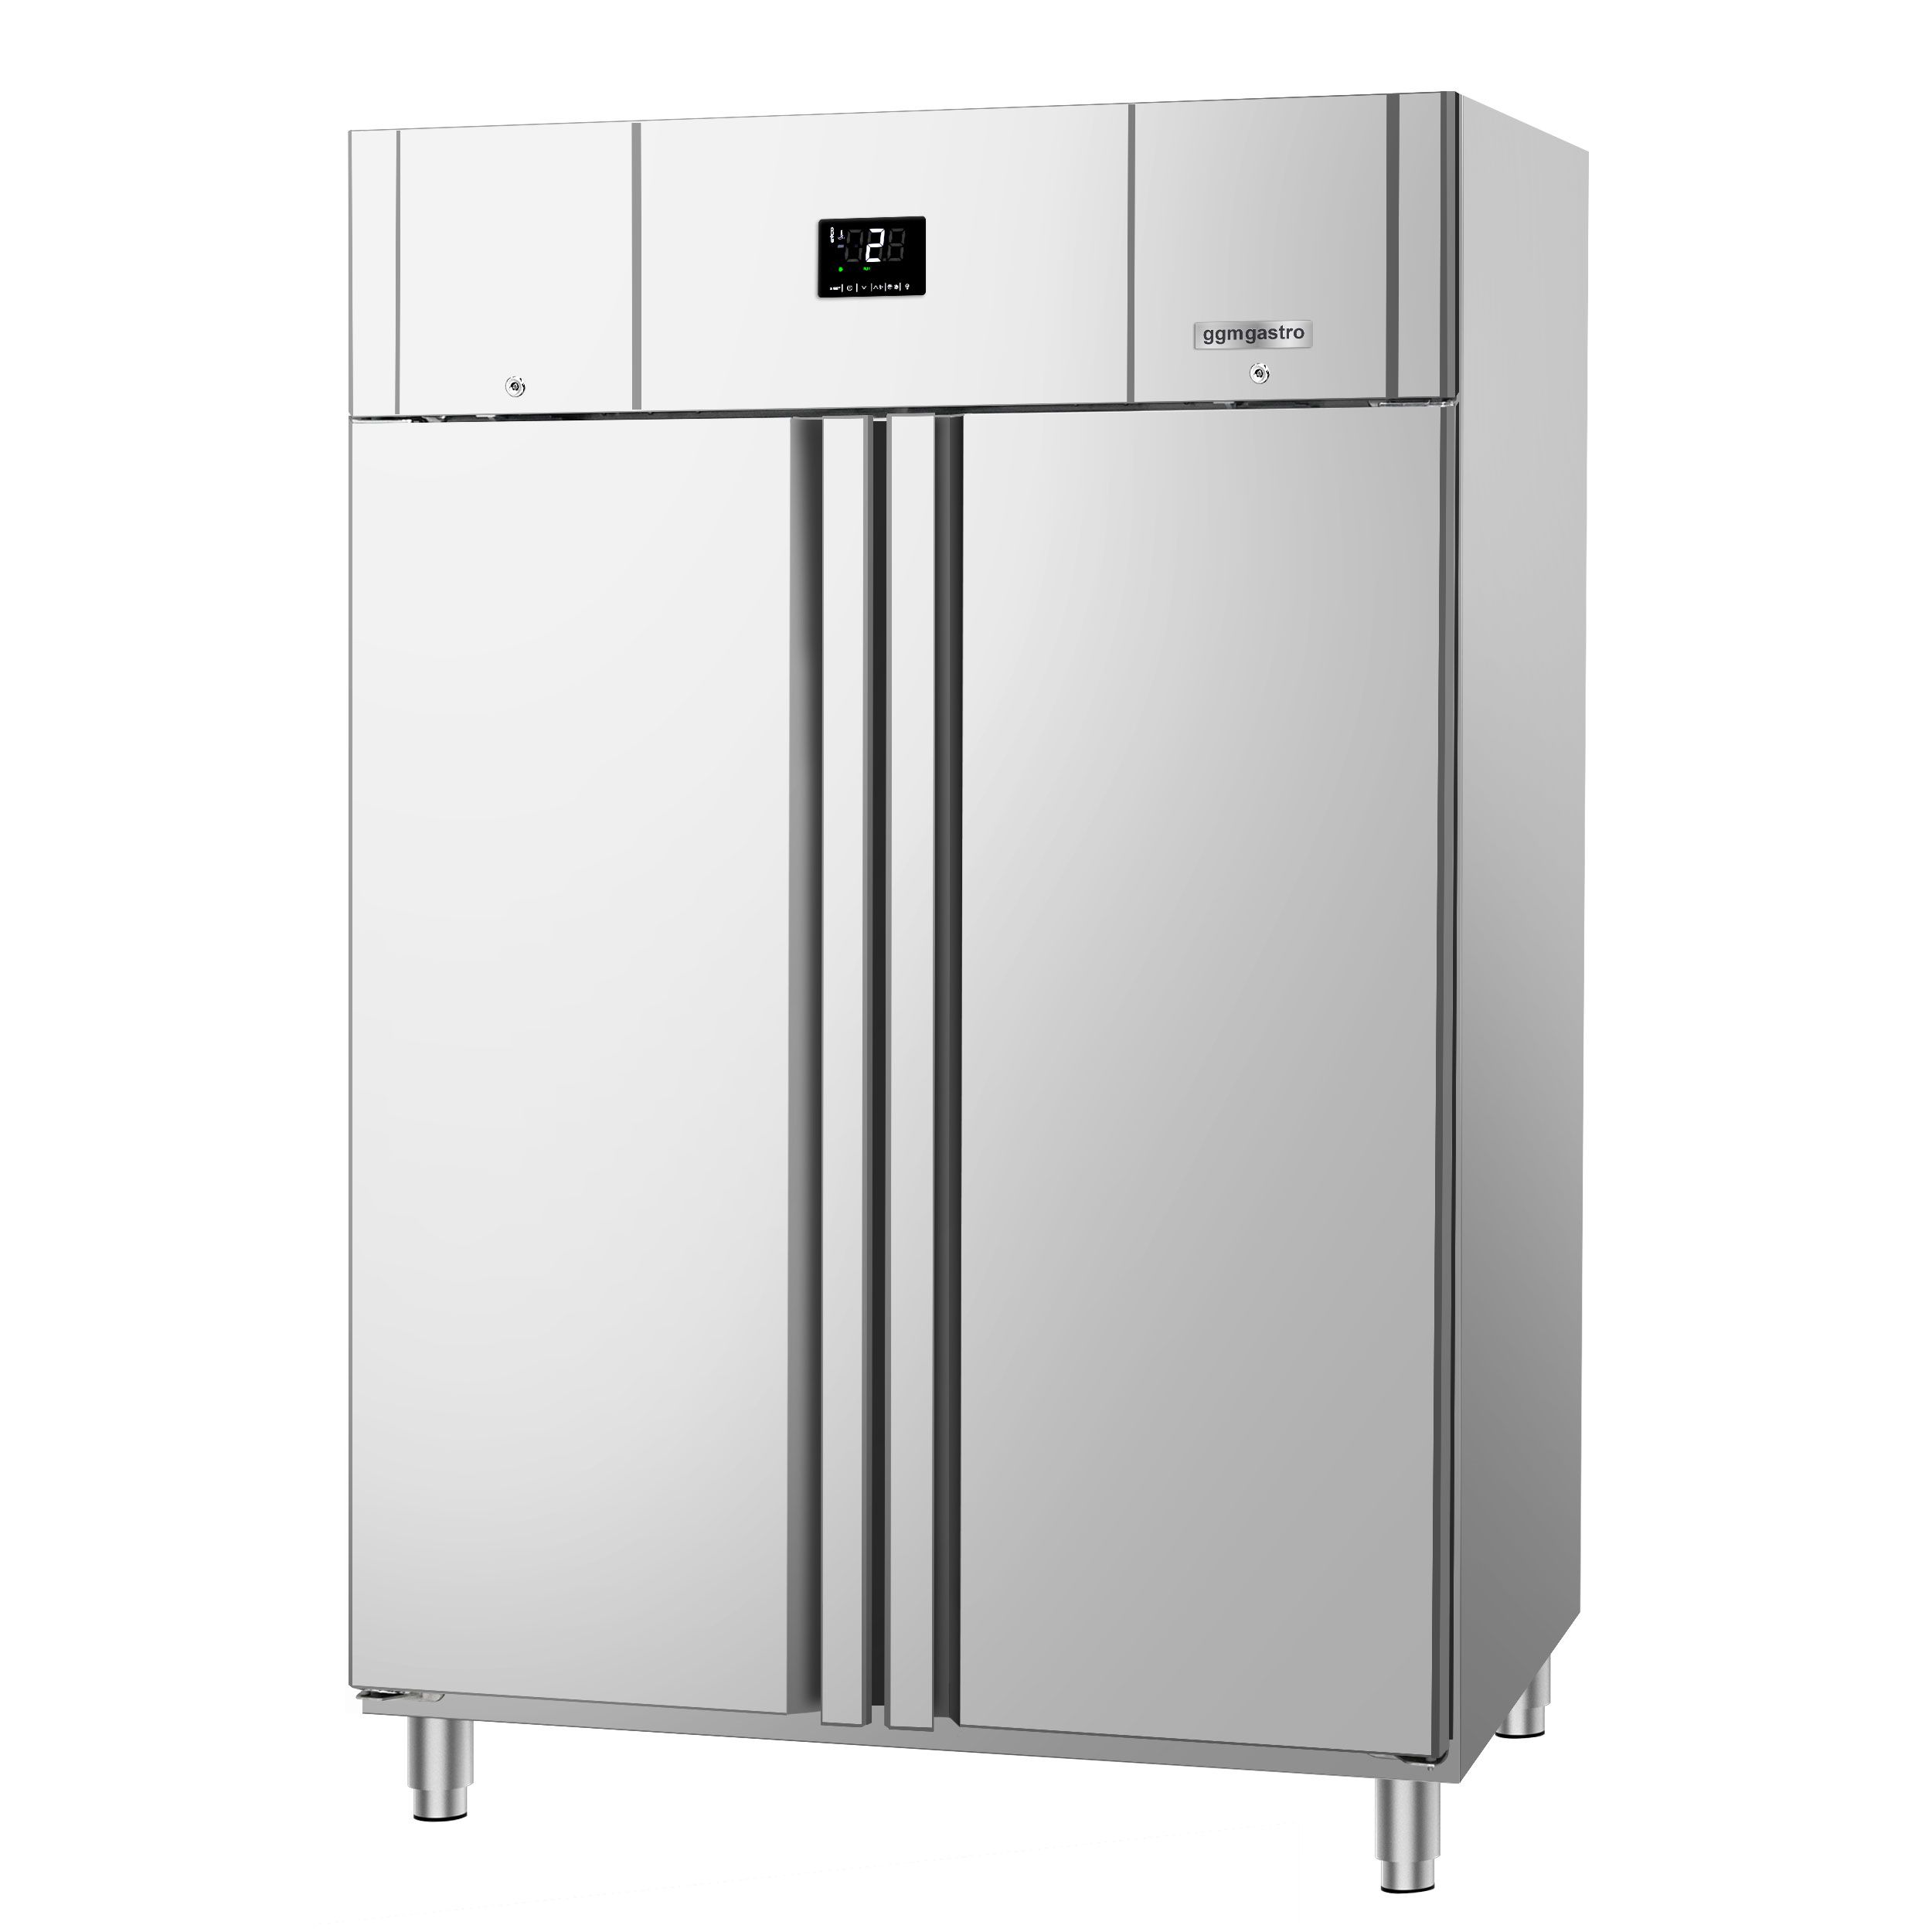 Gastro Kühlschrank - 1200 l - 6 Einstellbare Regale (2/1 GN) - auf Rädern -  inkl. Regale - Maxima